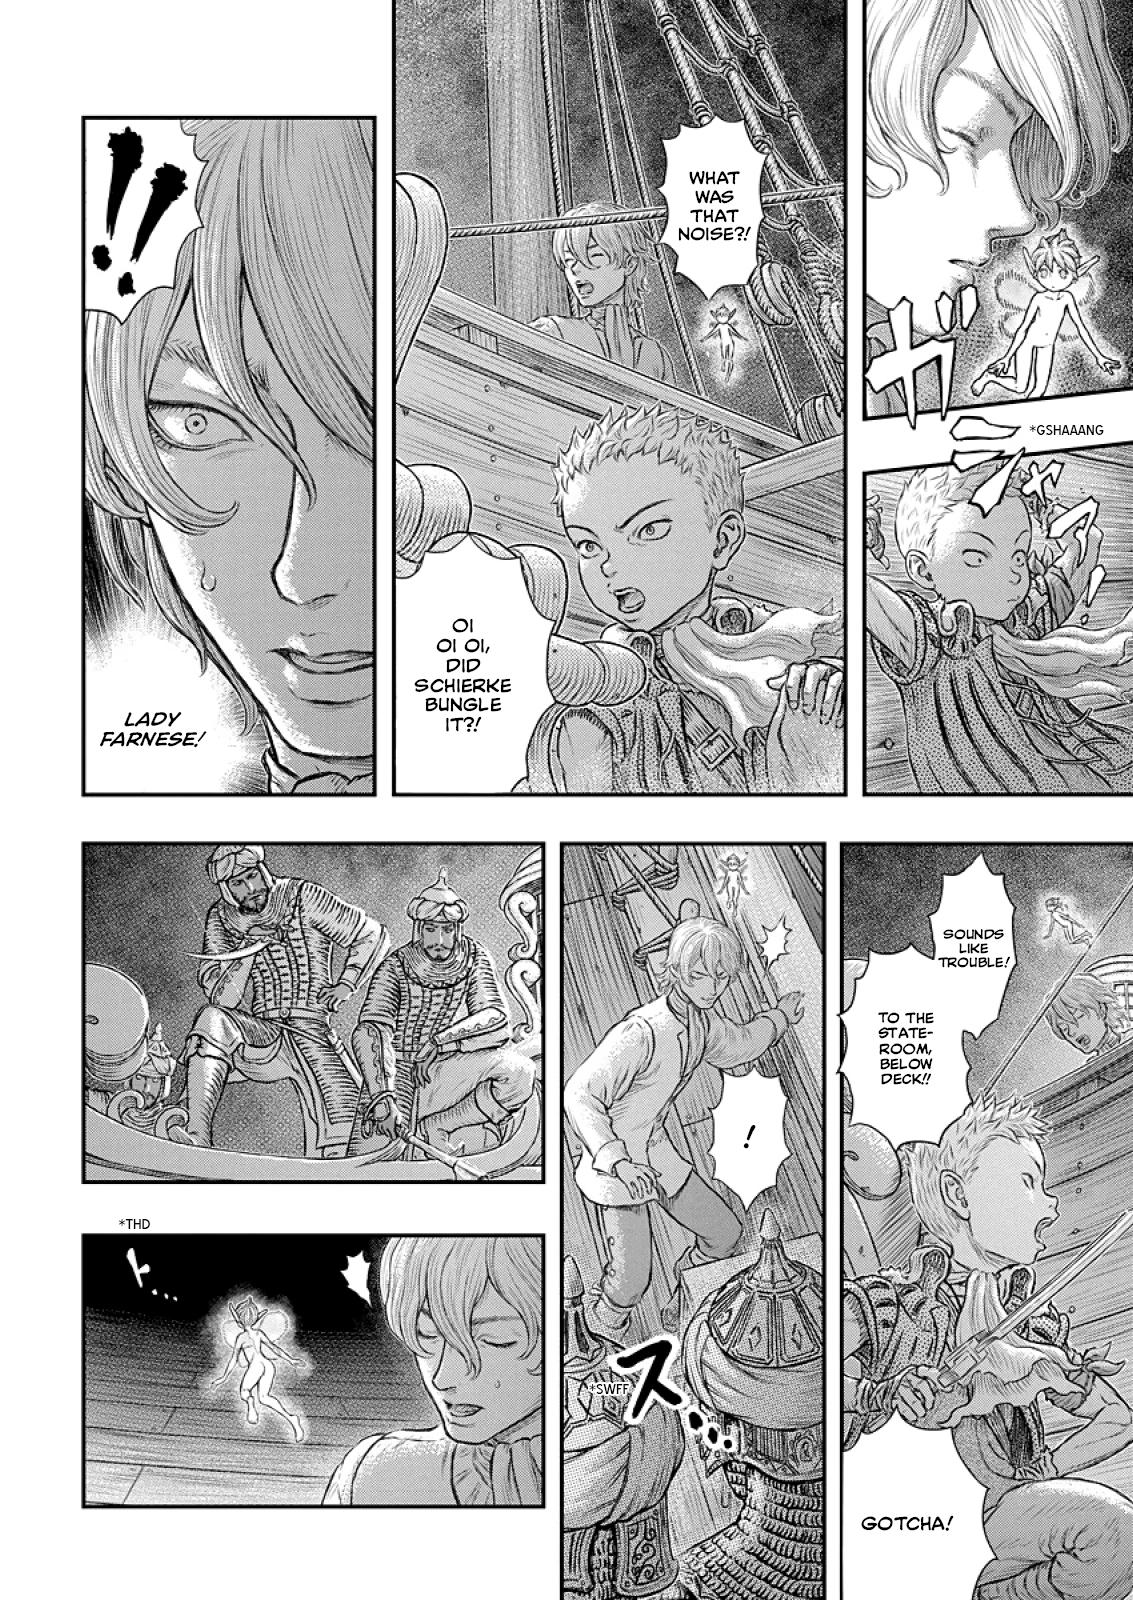 Berserk Manga Chapter 374 image 05